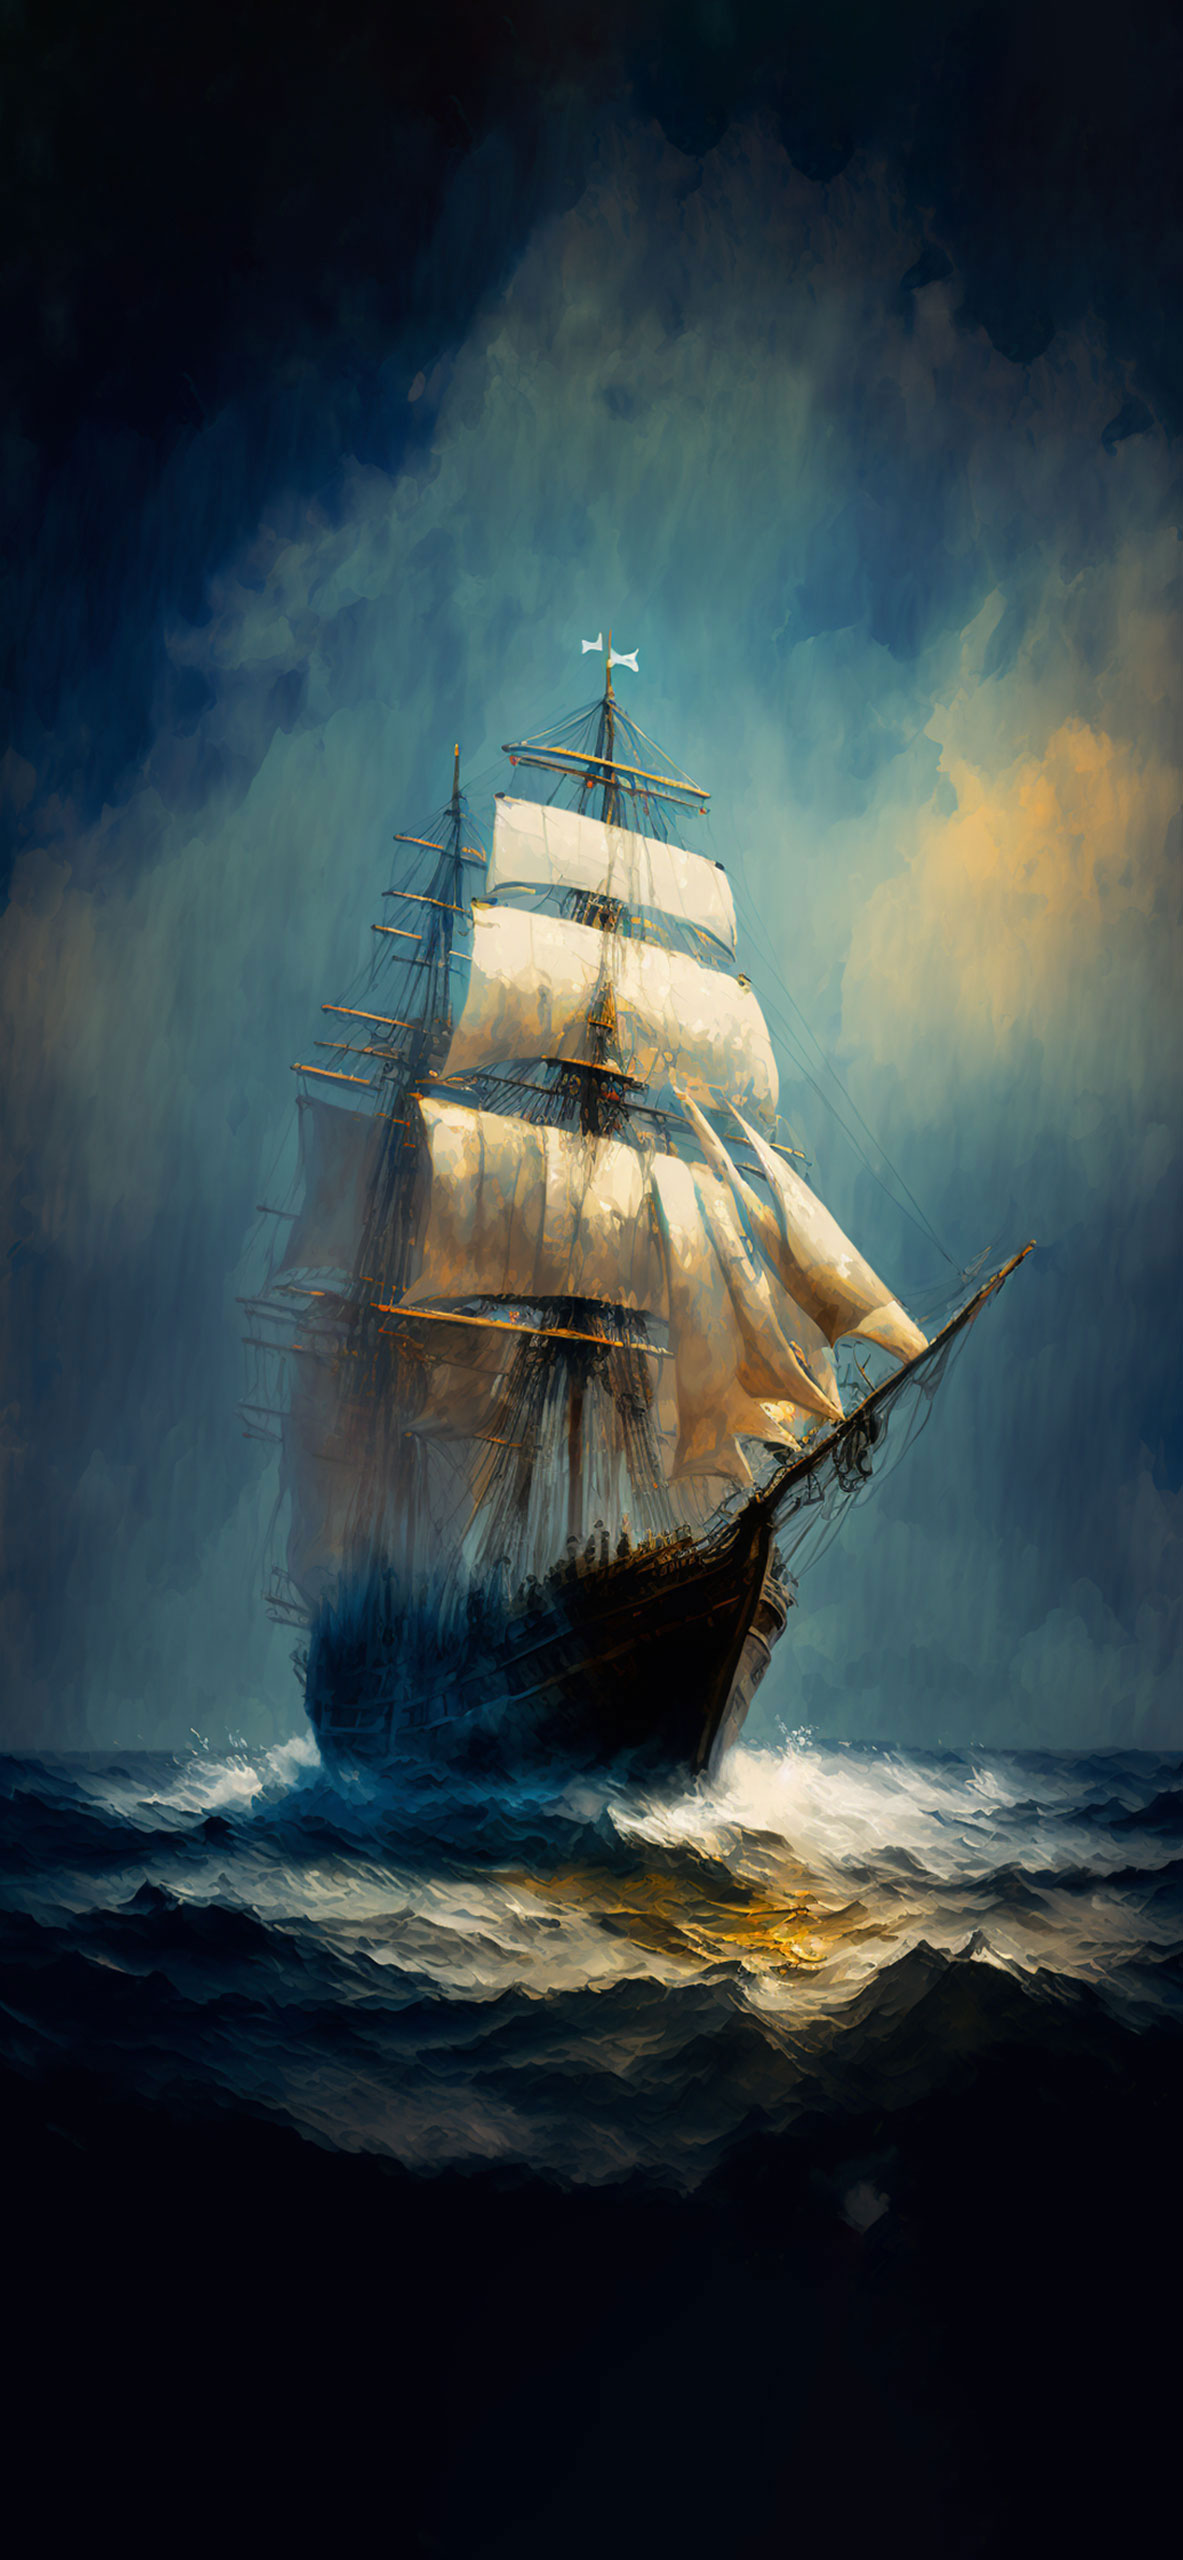 sailing ship at sea wallpaper